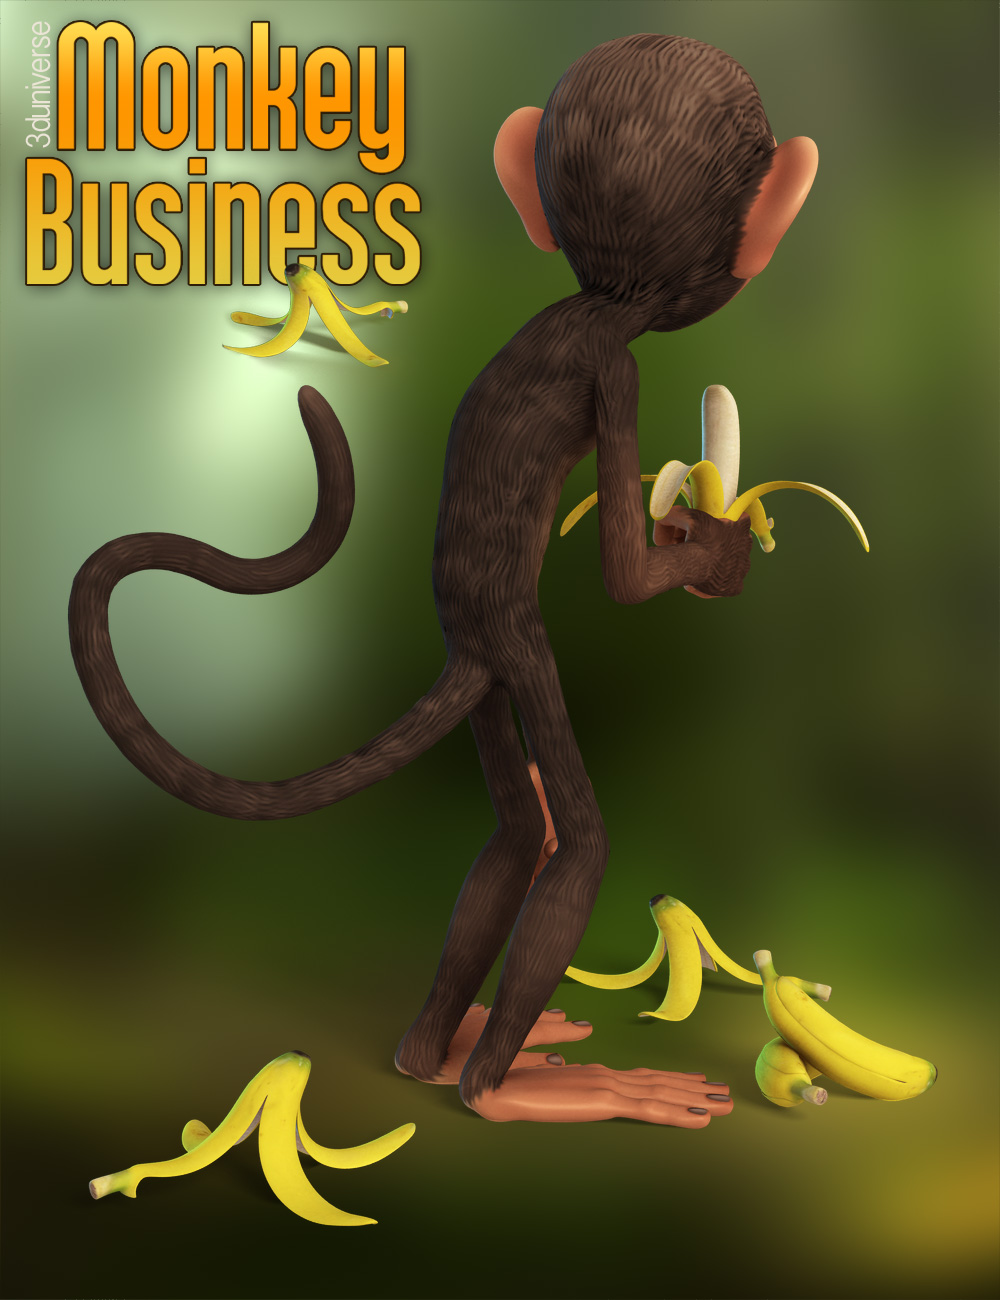 Monkey Business by: 3D Universe, 3D Models by Daz 3D